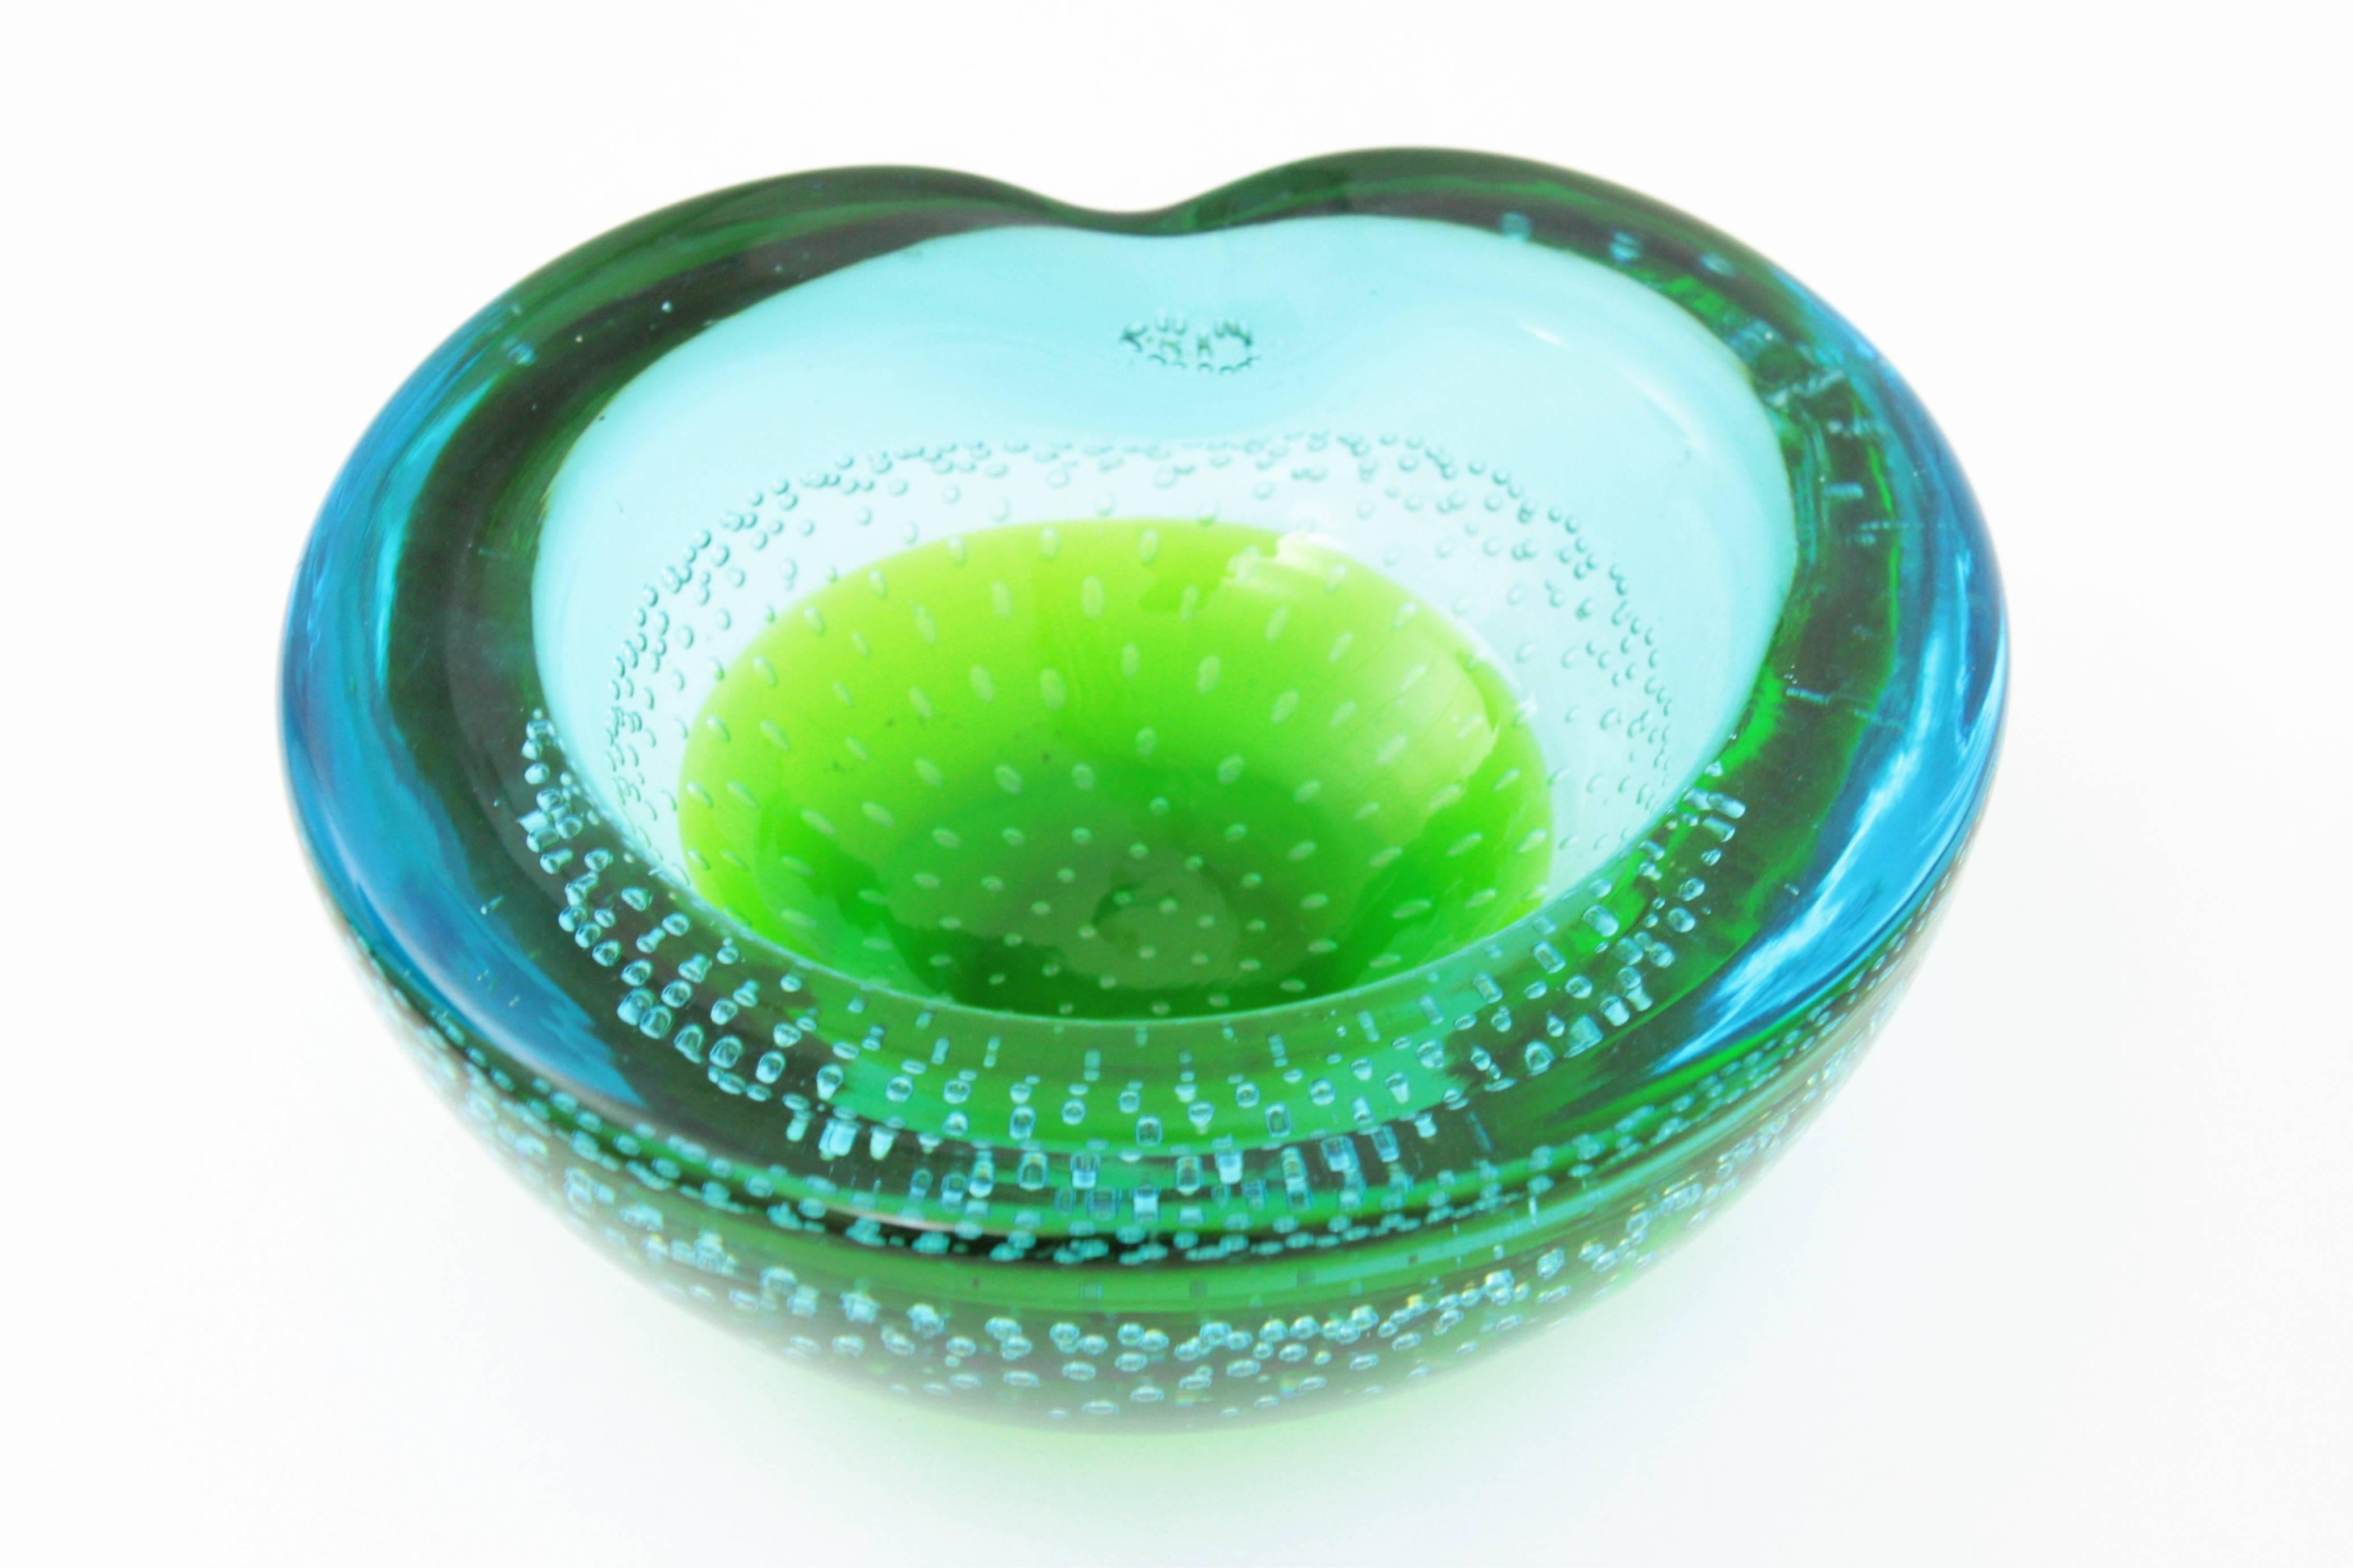 Galliano Ferro Green and Blue Sommerso Bullicante Murano Glass Bowl or Ashtray 1